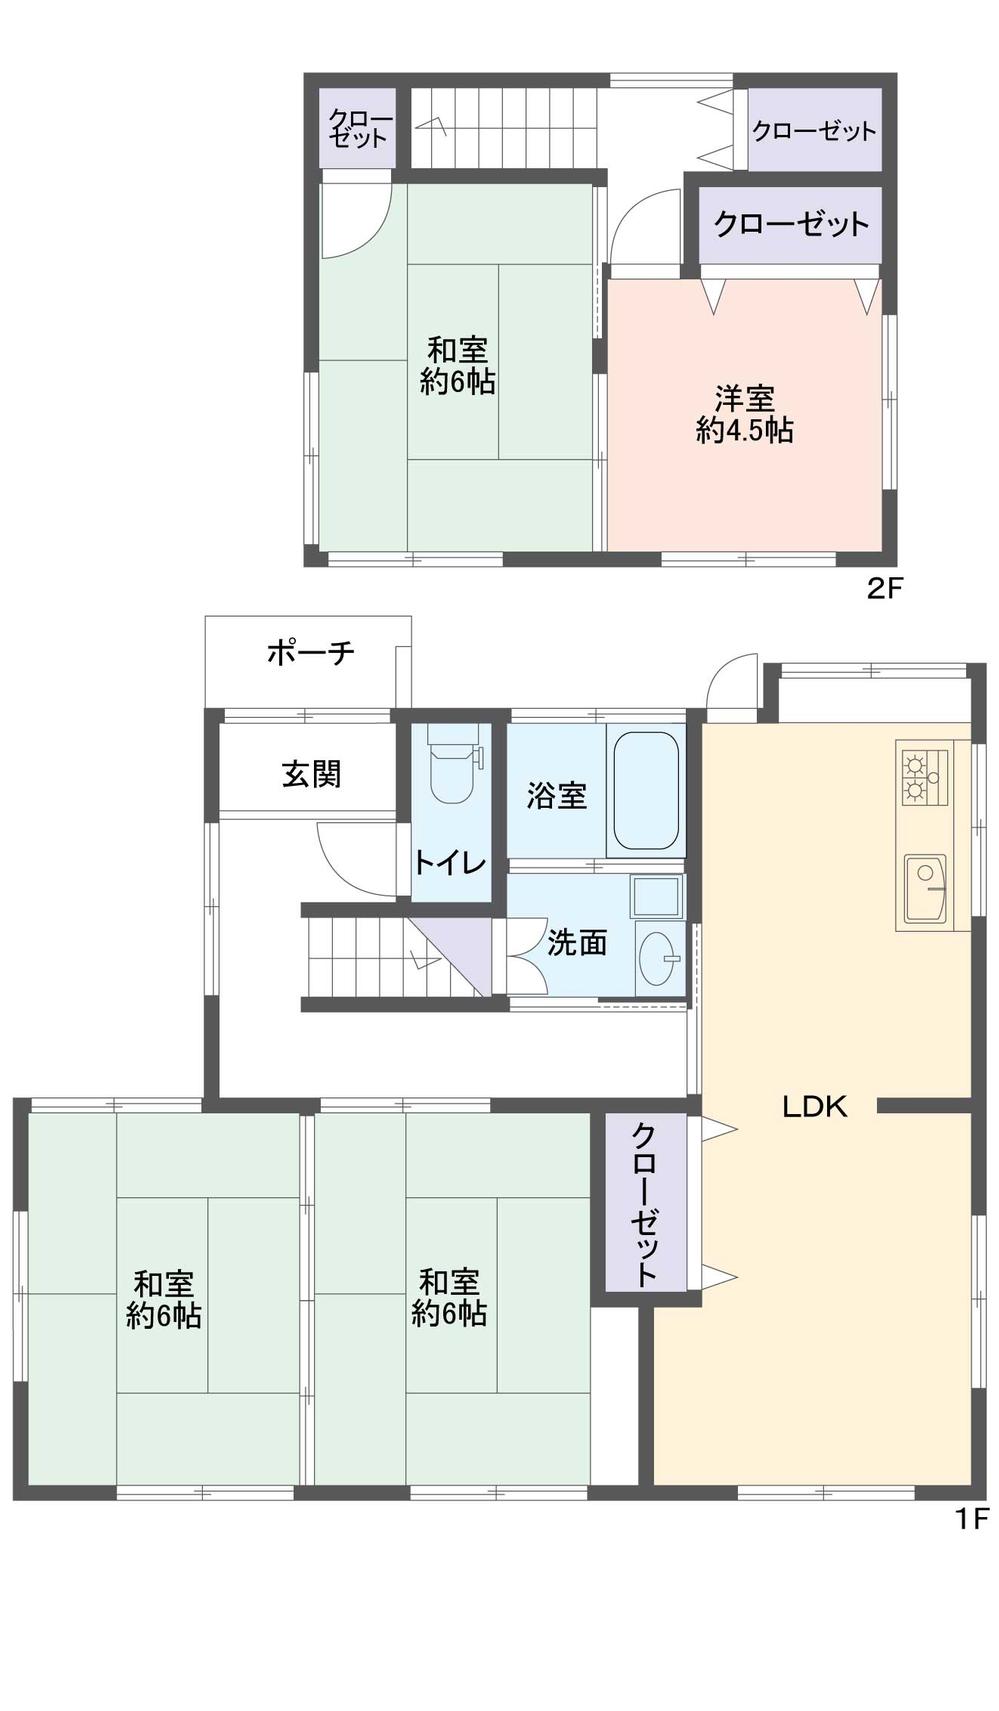 Floor plan. 9.8 million yen, 4LDK, Land area 185.13 sq m , Building area 93.85 sq m indoor (July 2013) Shooting